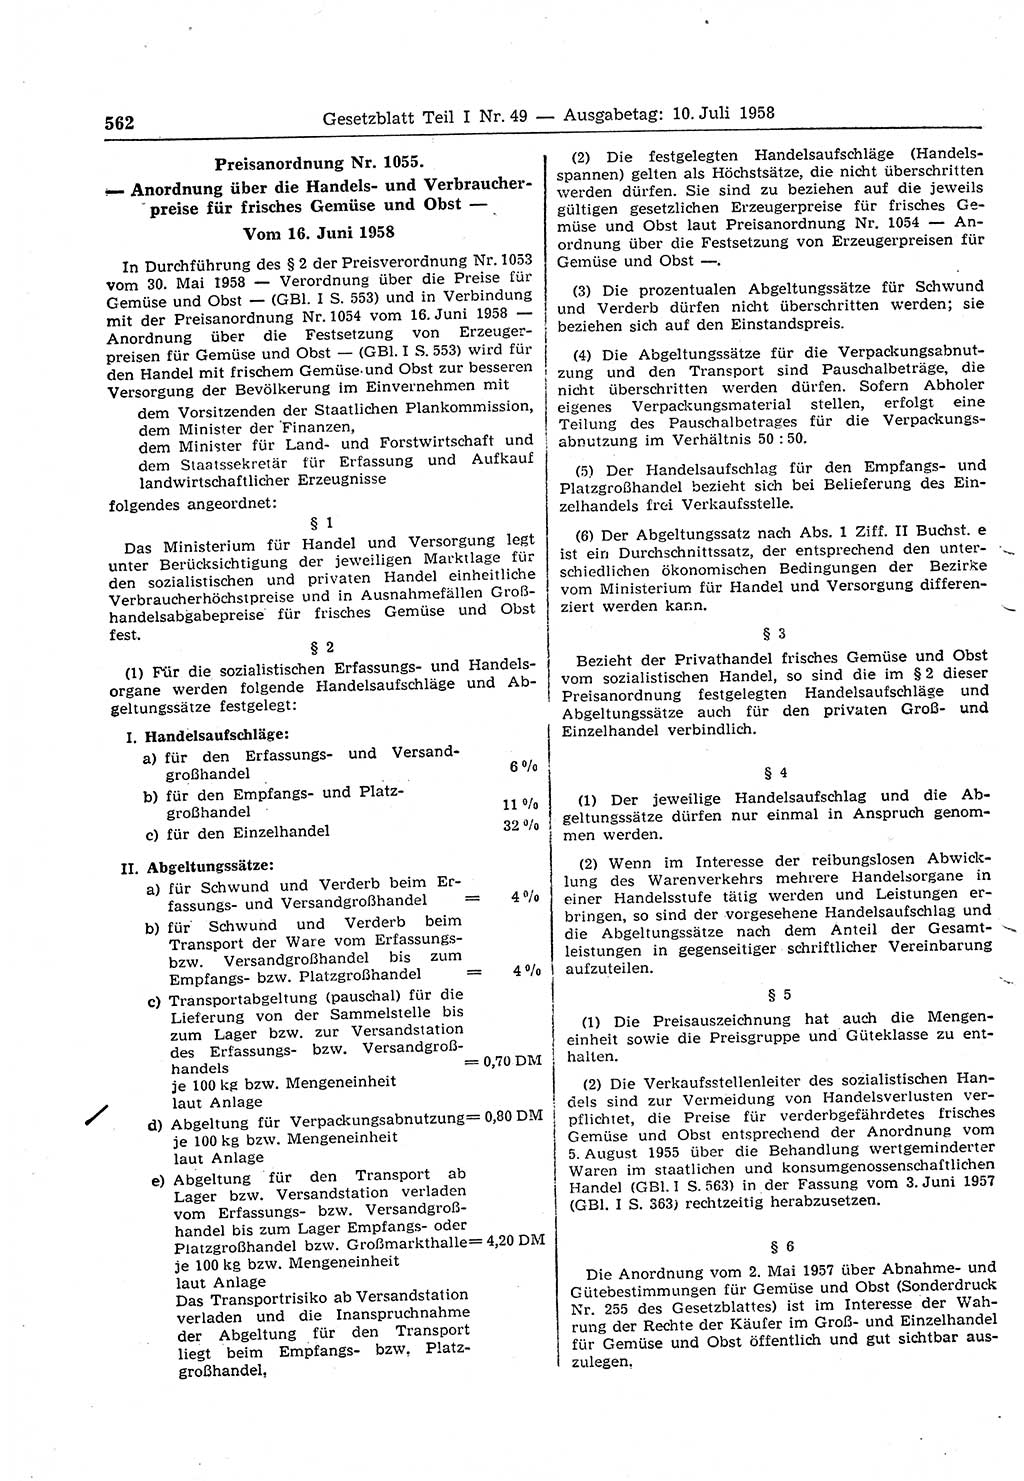 Gesetzblatt (GBl.) der Deutschen Demokratischen Republik (DDR) Teil Ⅰ 1958, Seite 562 (GBl. DDR Ⅰ 1958, S. 562)